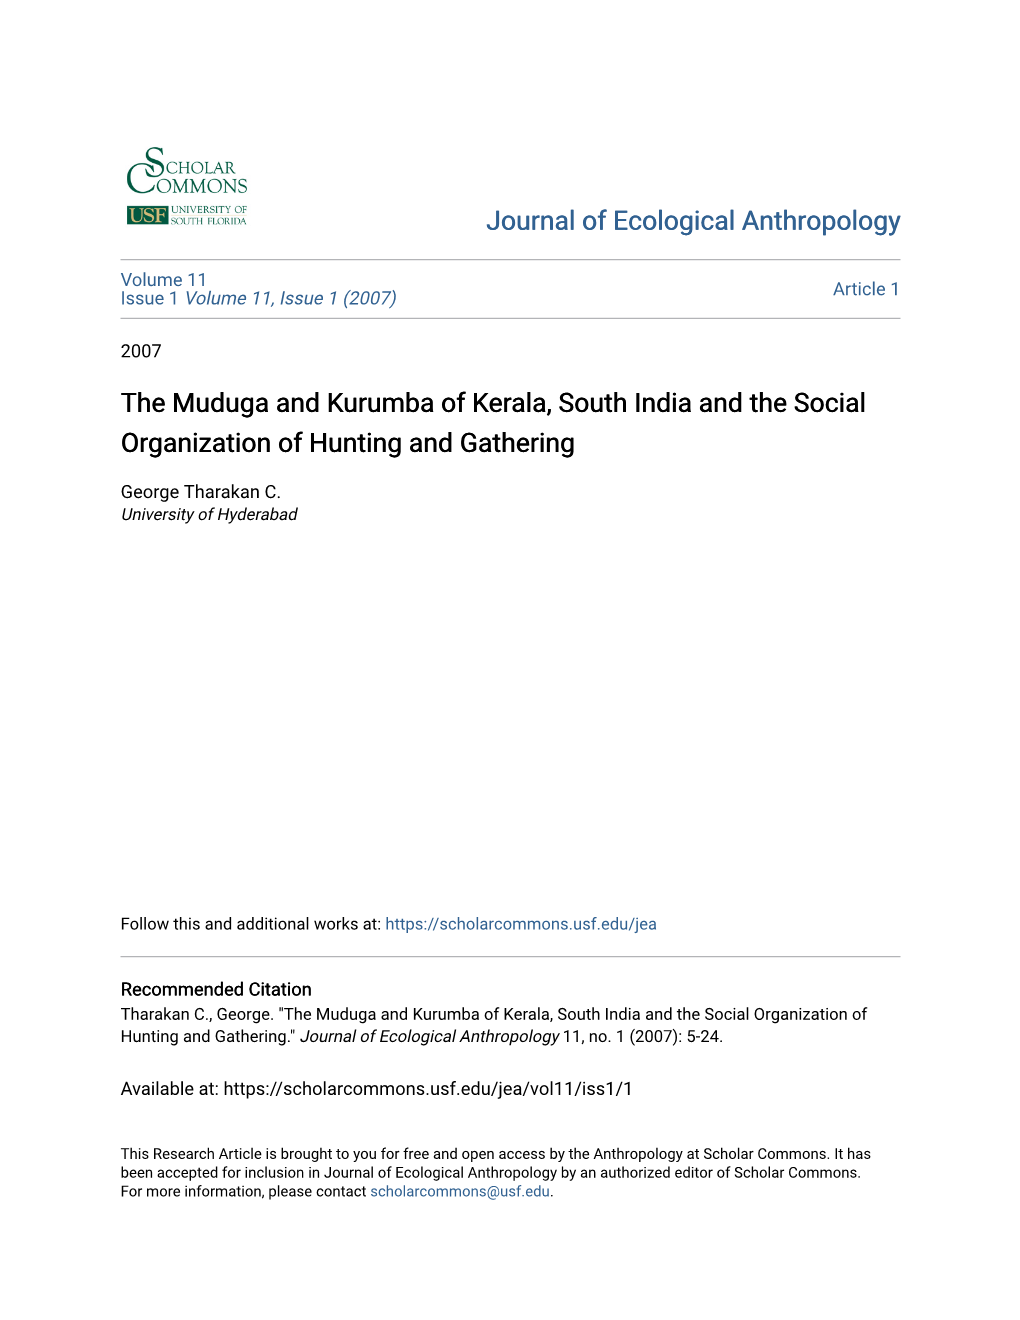 The Muduga and Kurumba of Kerala, South India and the Social Organization of Hunting and Gathering